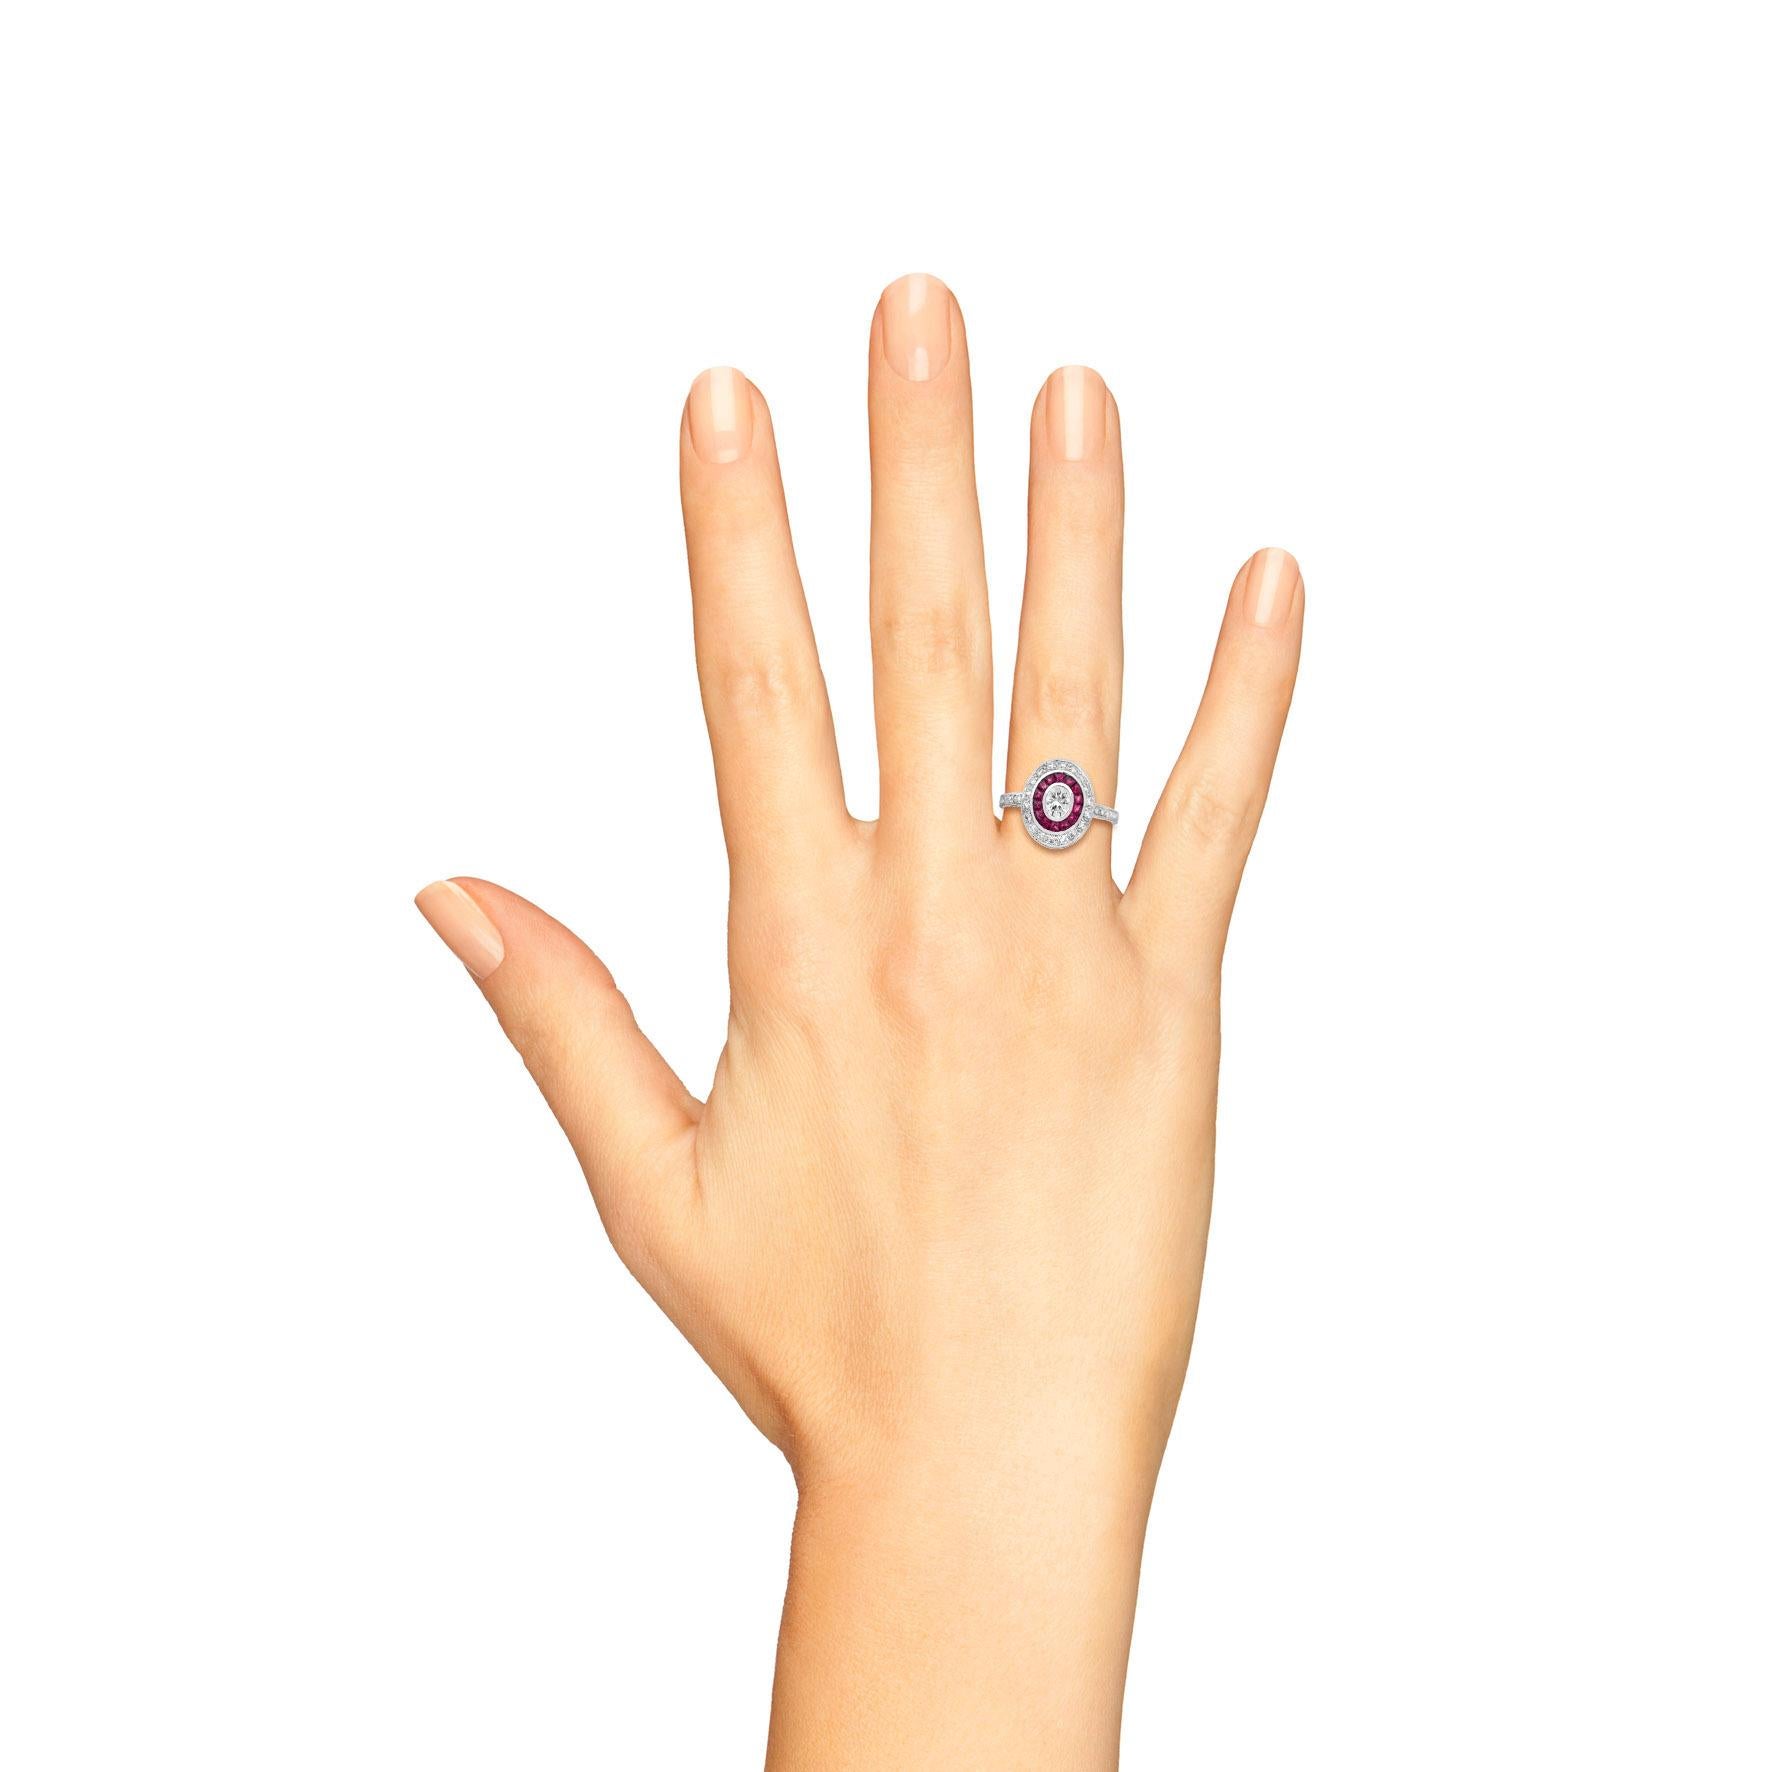 Dieser wunderschöne, vom Vintage-Stil inspirierte Ring besticht durch sein kontrastreiches und farbenfrohes Design. Die schicke geometrische Fassung ist mit strahlend weißen Naturdiamanten sowie Naturrubinen besetzt. In der Mitte befindet sich ein